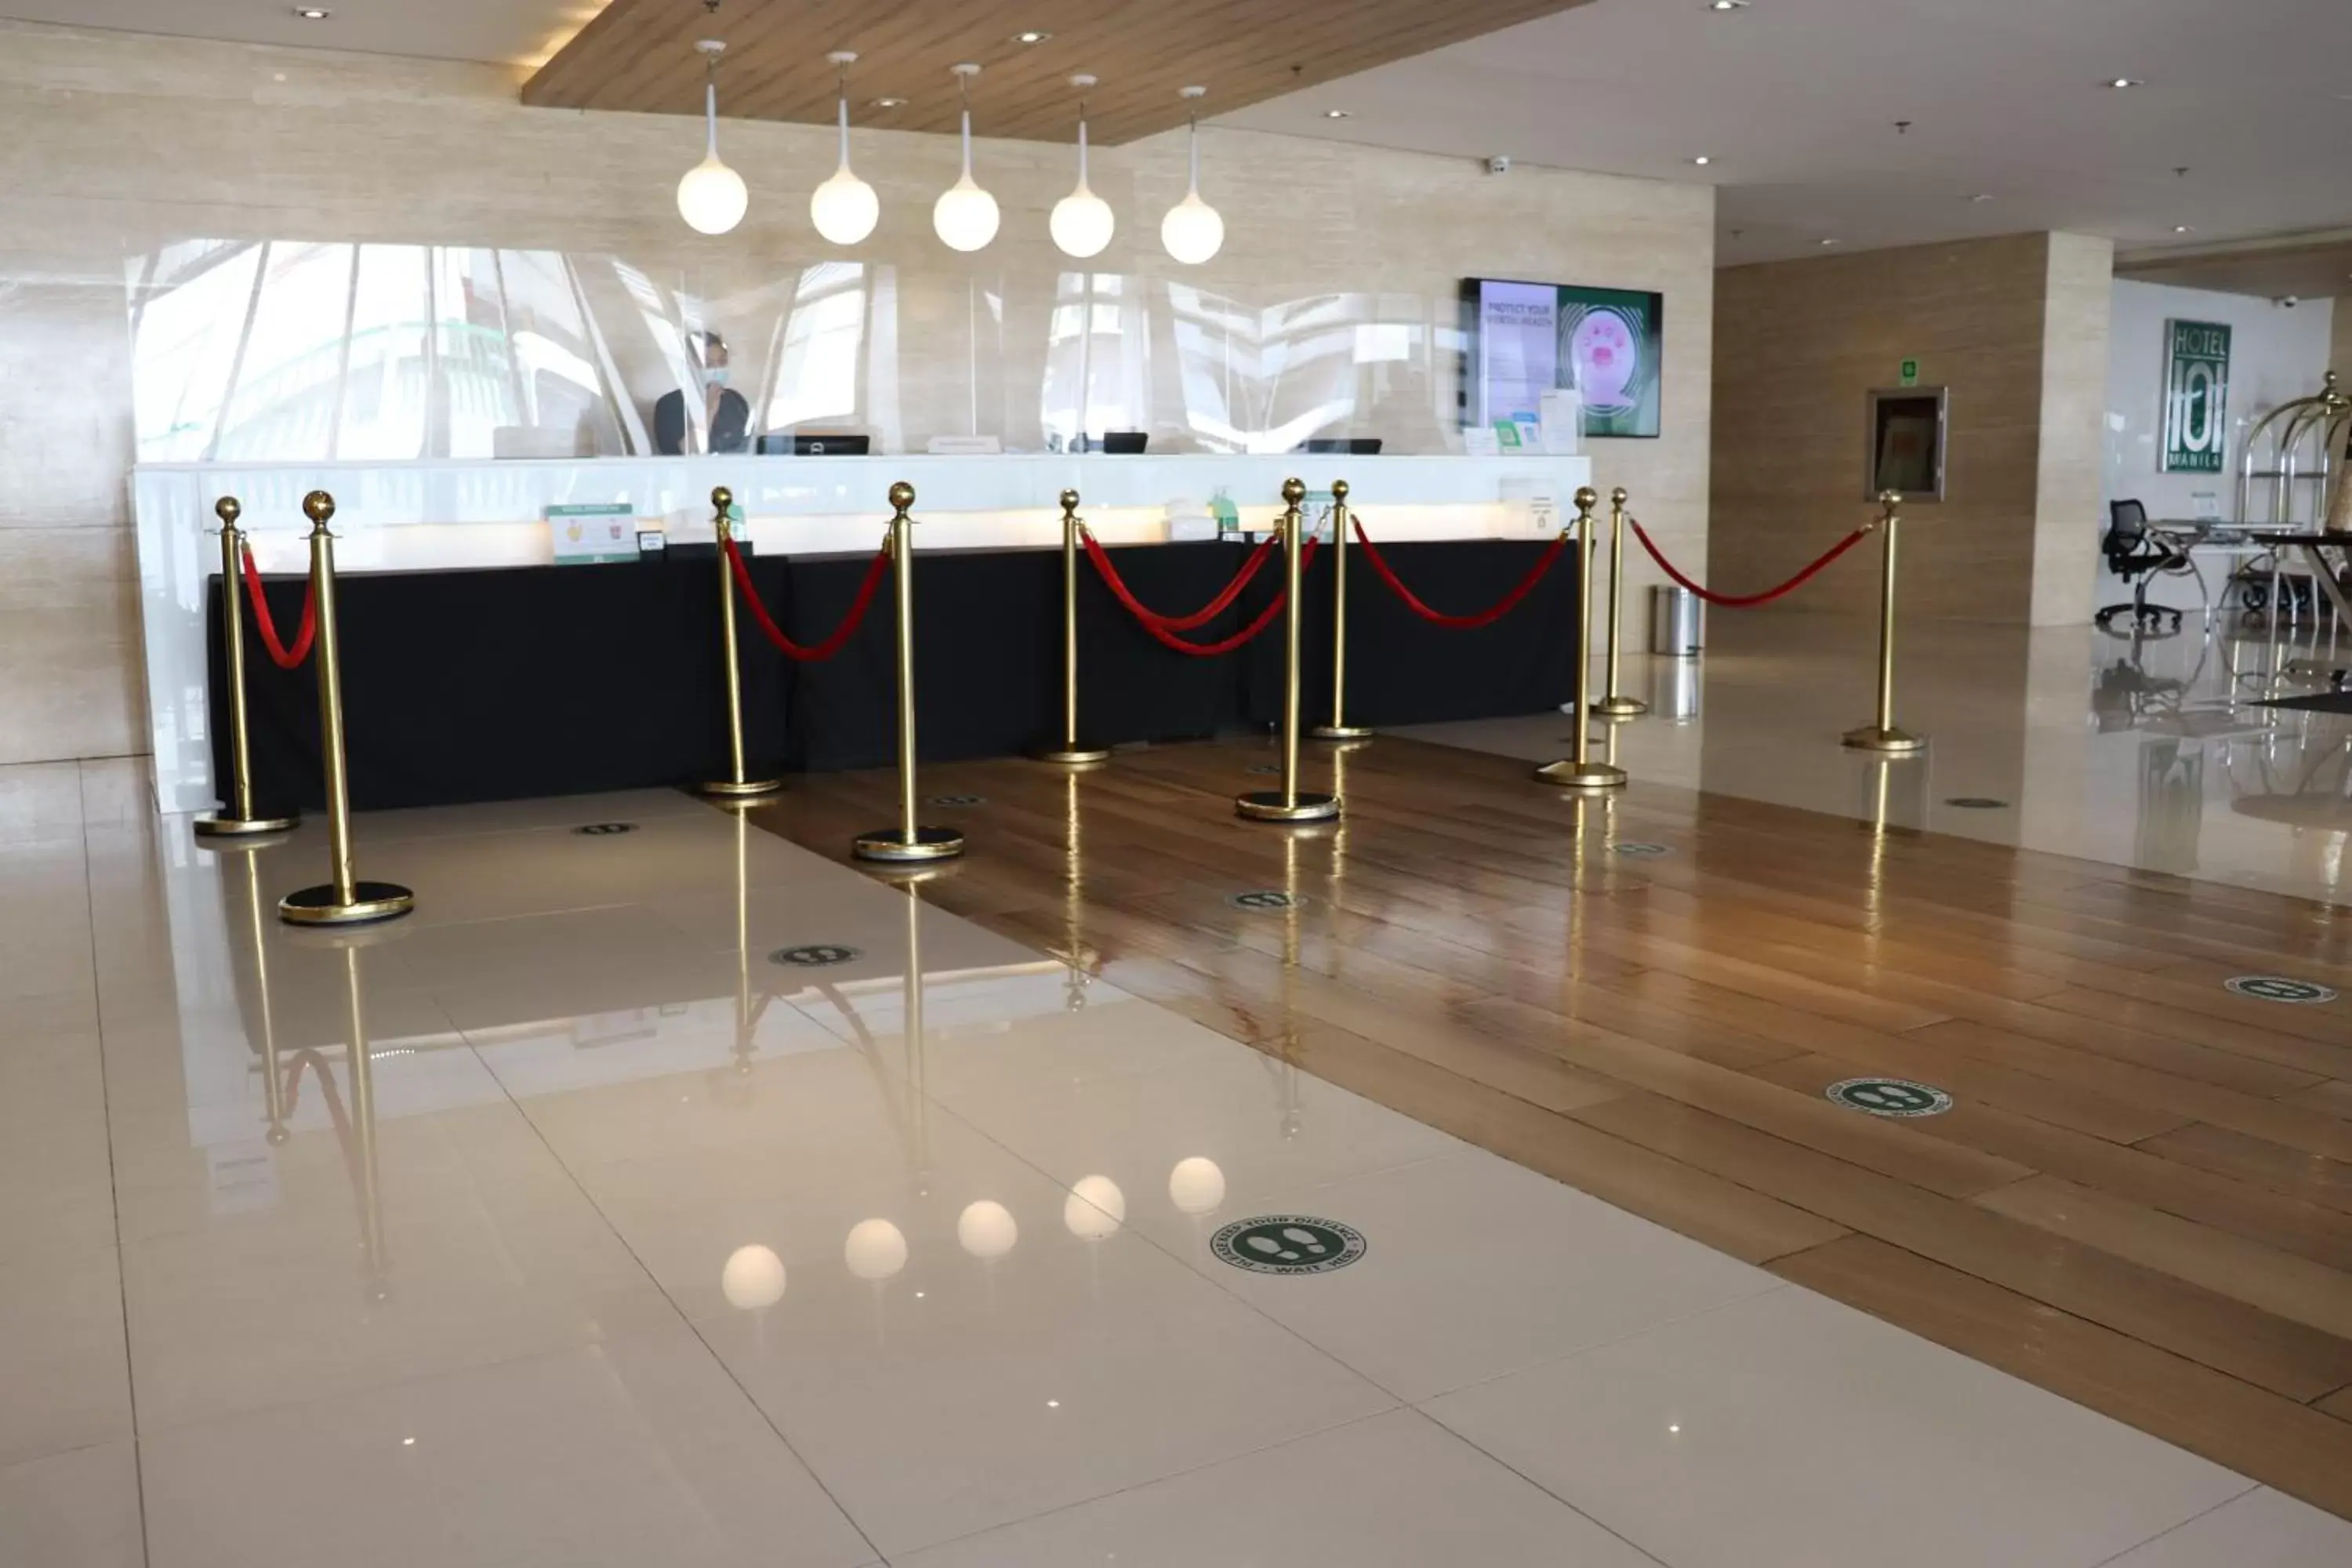 Lobby or reception in Hotel 101 - Manila